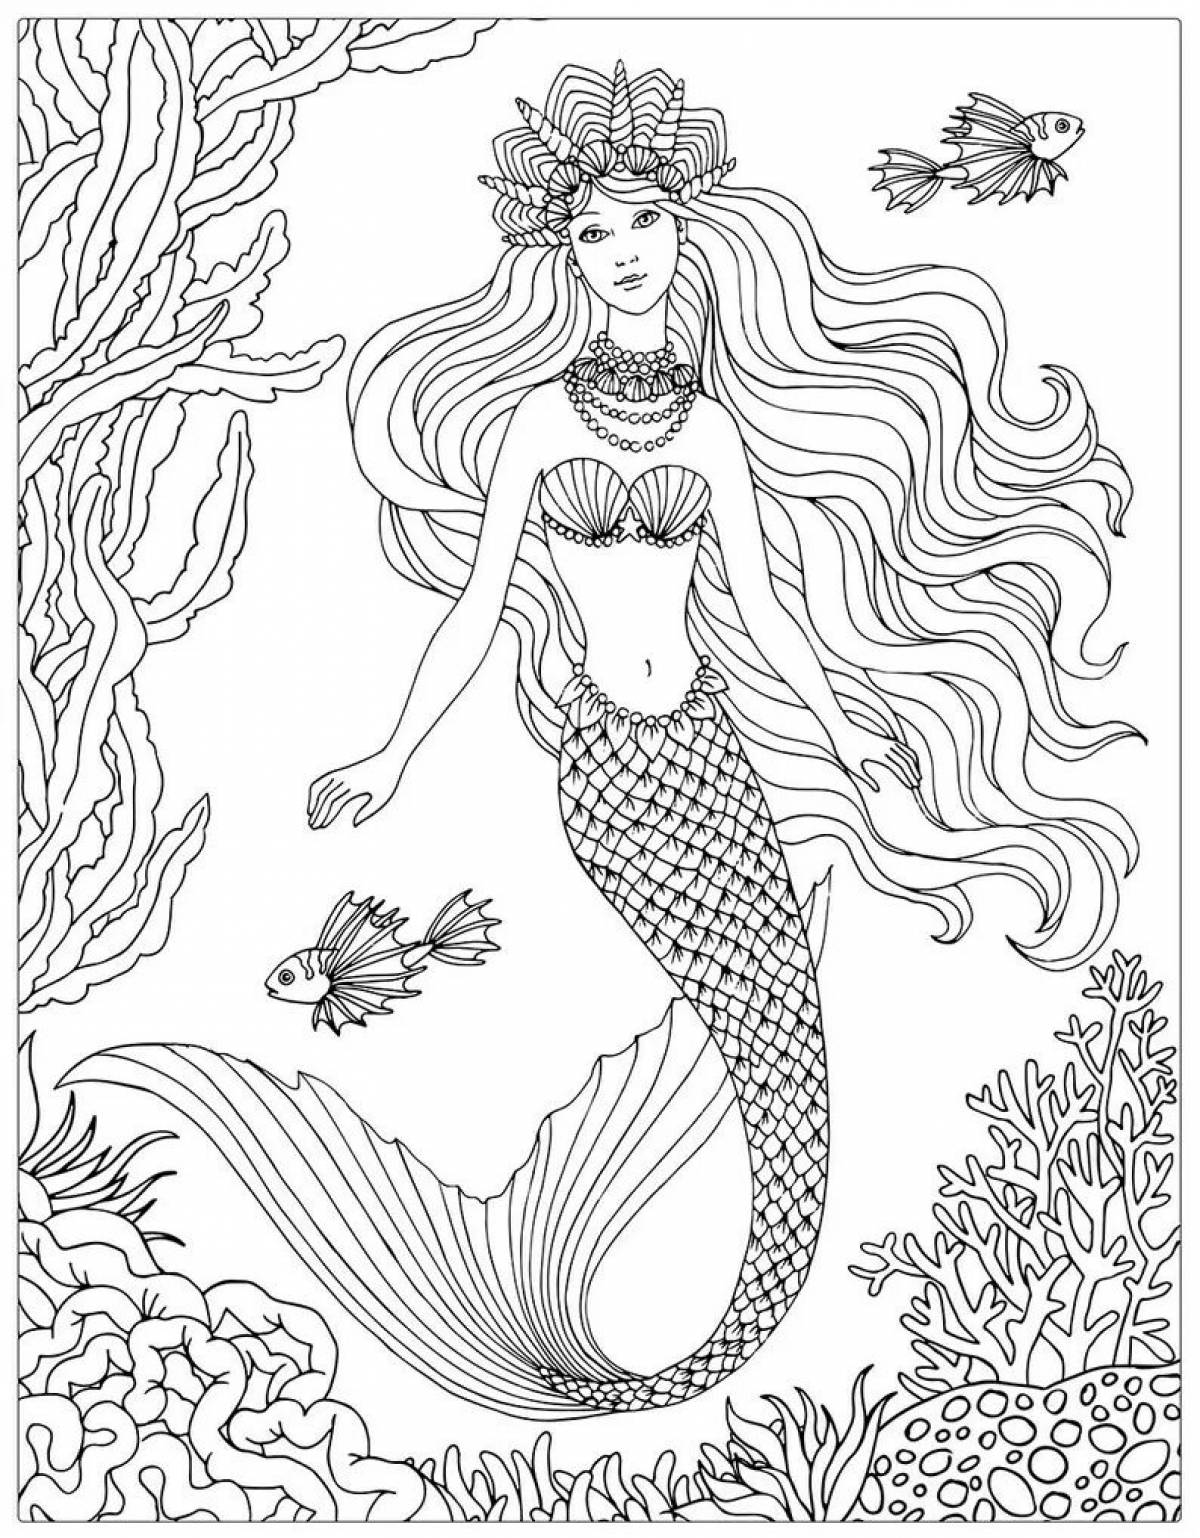 Mermaid queen #4